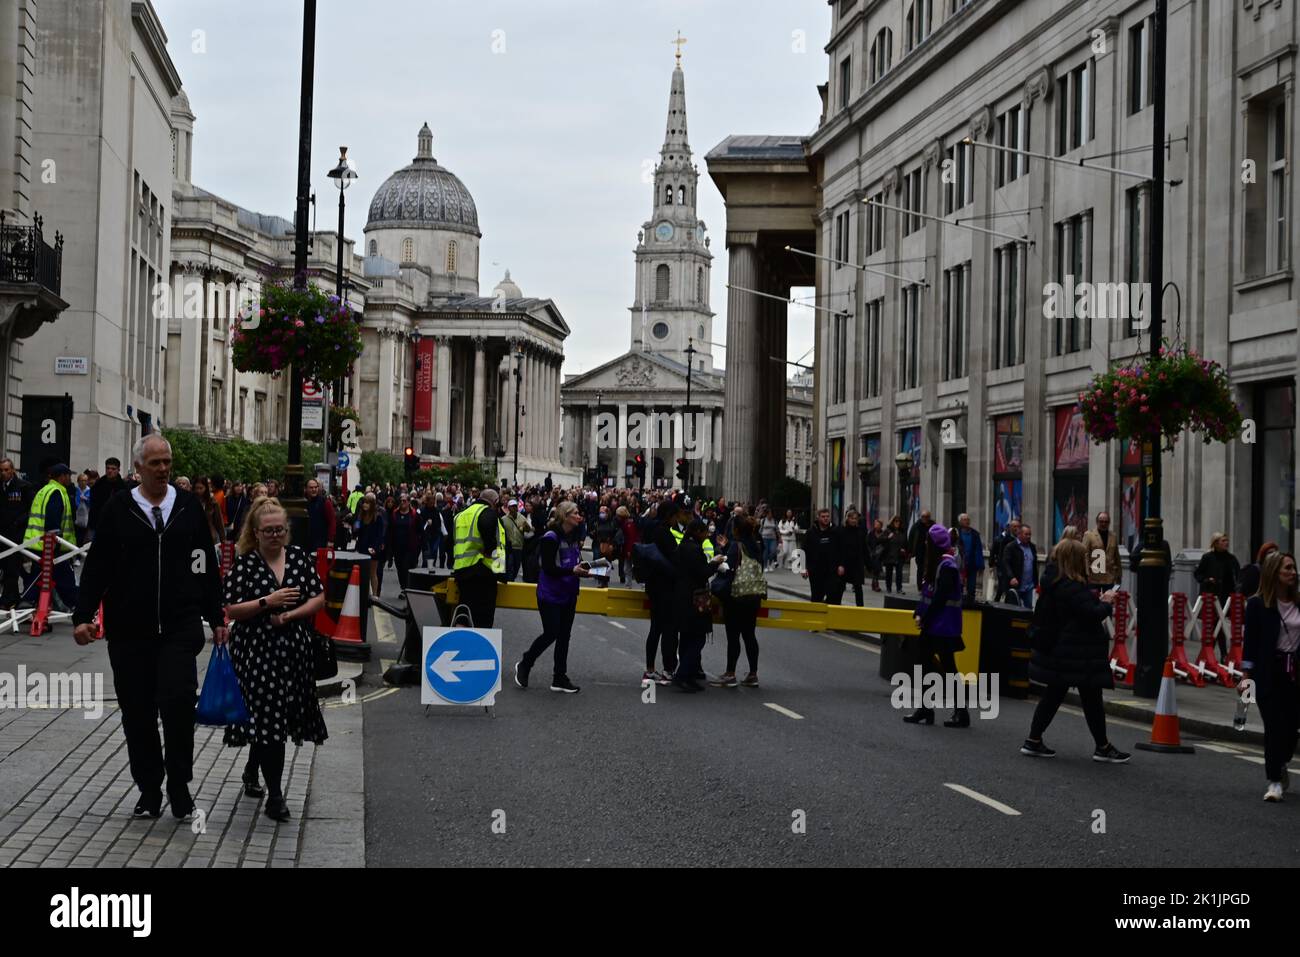 Staatsbegräbnis Ihrer Majestät Königin Elizabeth II., London, Großbritannien, Montag, 19.. September 2022. Massen von Menschen, die sich auf den Weg zur Veranstaltung entlang der Pall Mall East machen. Stockfoto